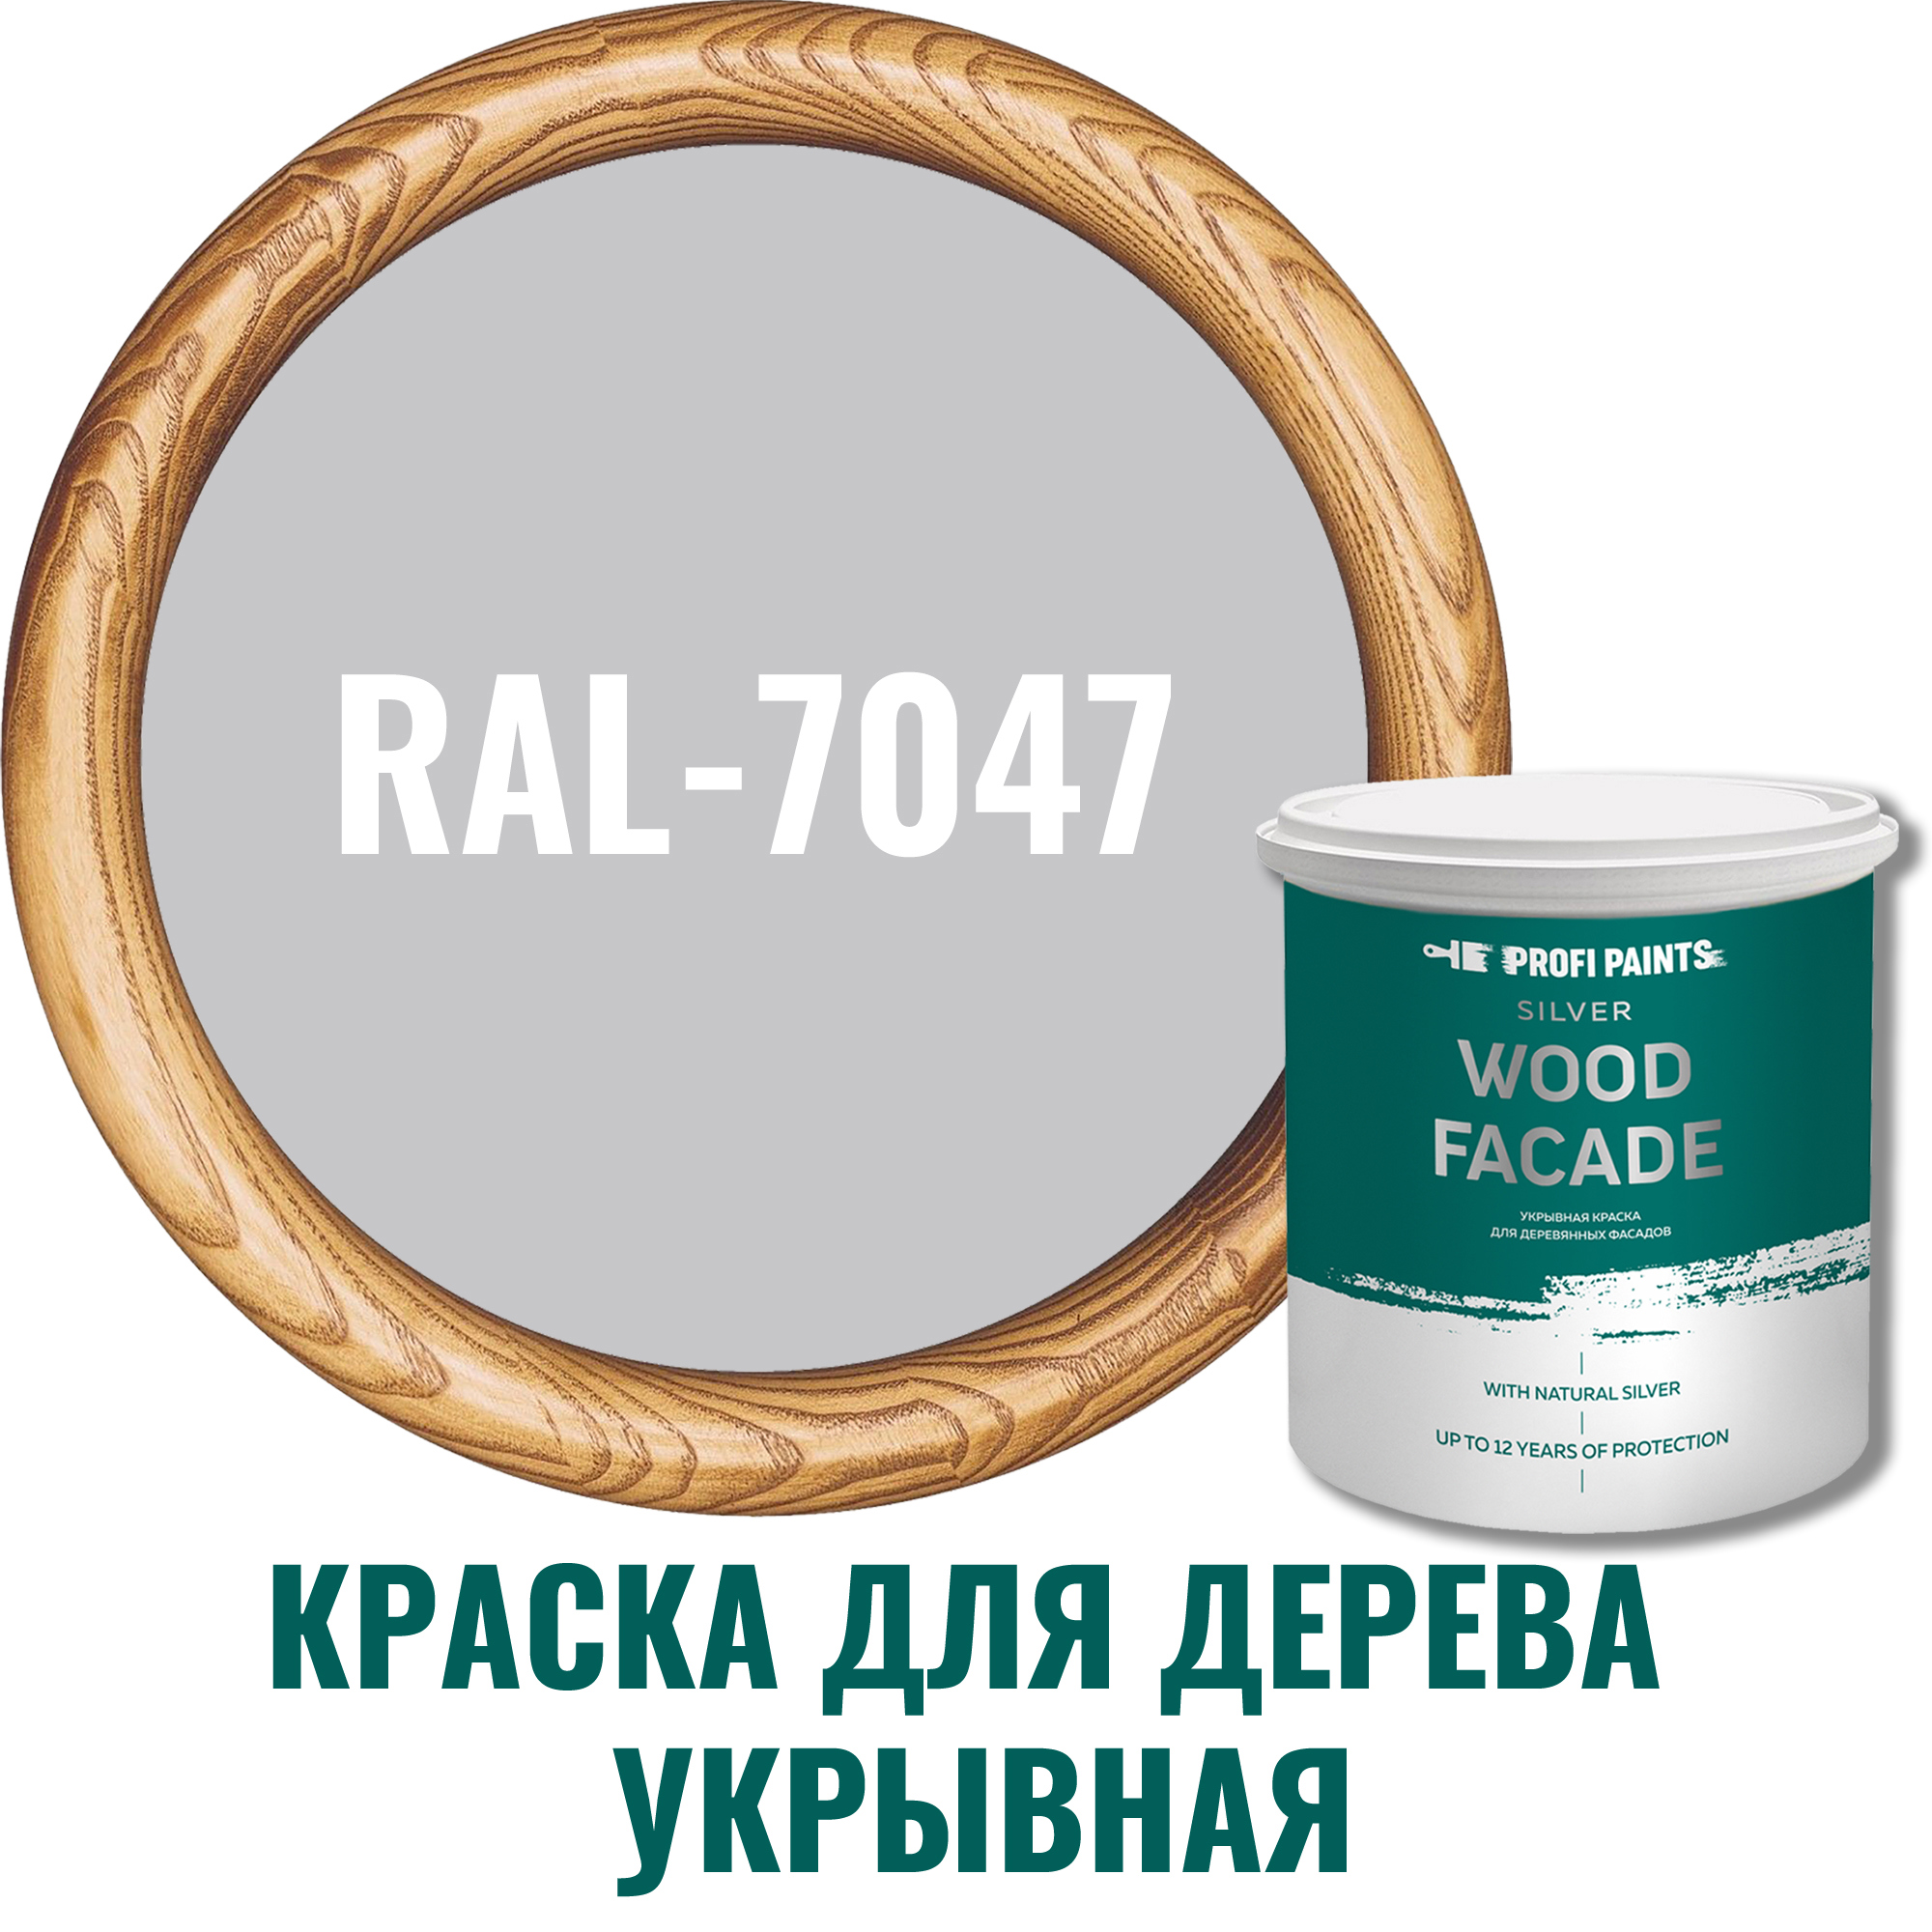 91106616 Краска для дерева 11256_D SILVER WOOD FASADE цвет RAL-7047 светло-серый 9 л STLM-0487609 PROFIPAINTS